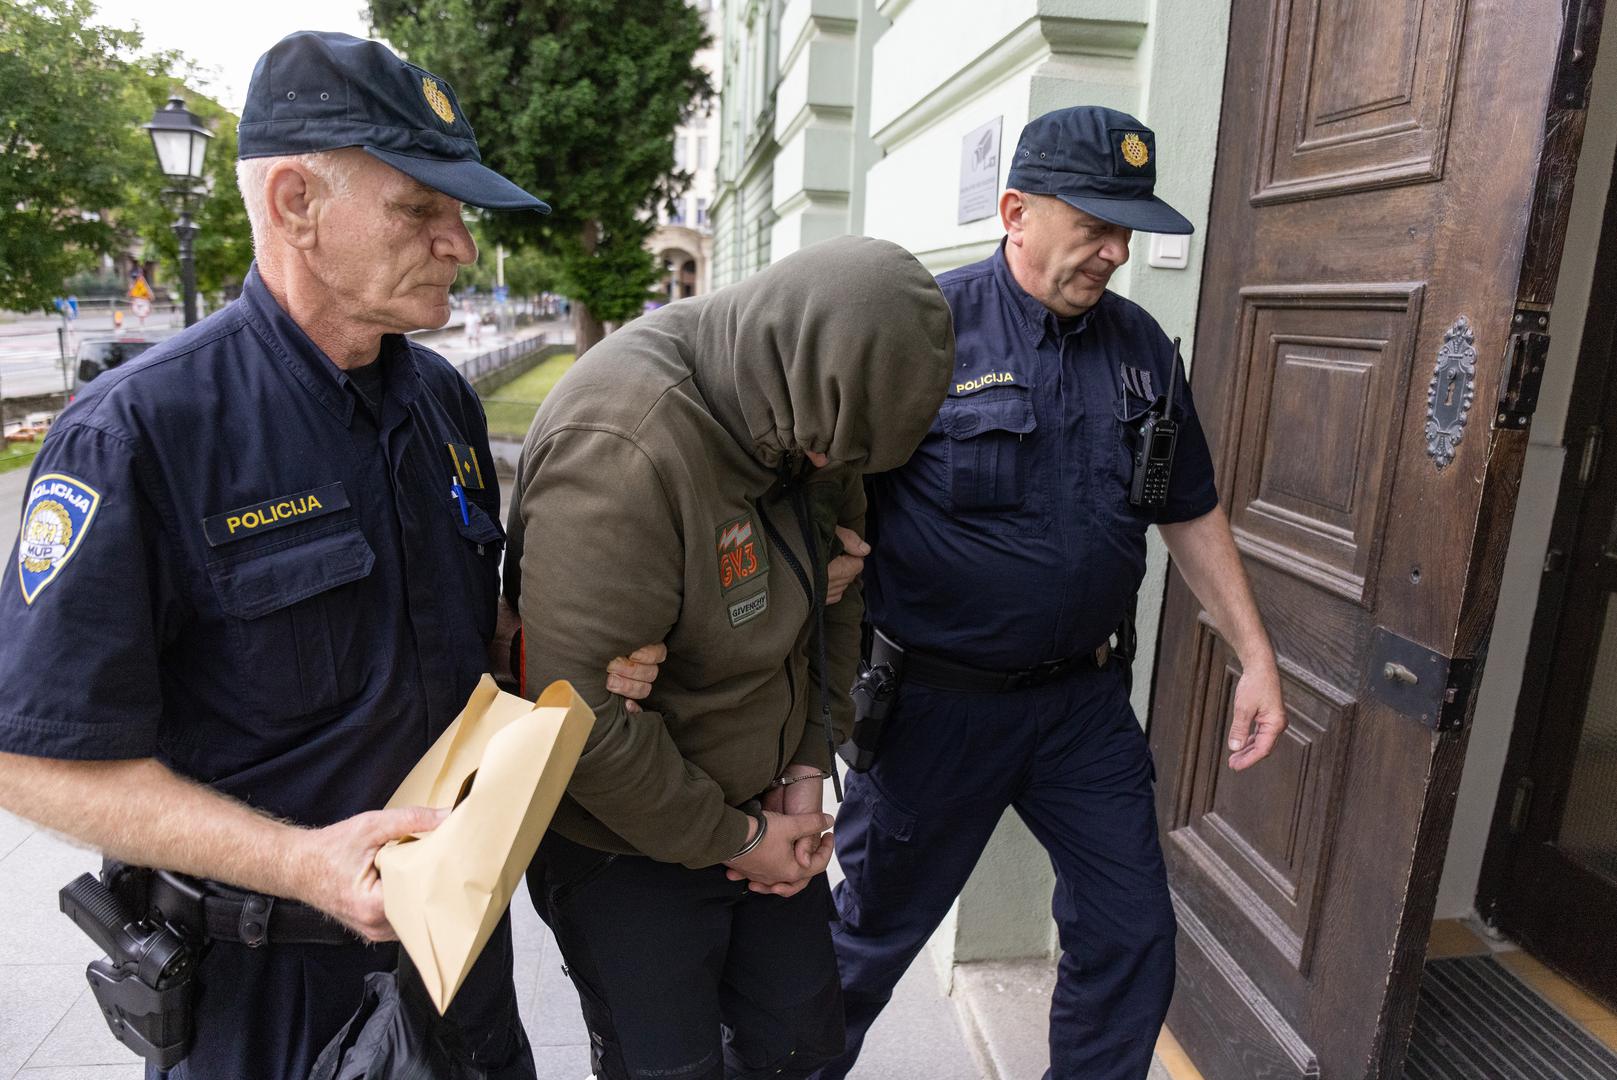 Na Županijski sud u Osijeku privedeni su osumnjičenici za nelegalnu proizvodnju i preprodaju marihuane, uhićeni tijekom akcije PNUSKOK-a i USKOK-a, koji su započeli kriminalističko istraživanje protiv 10 osoba.